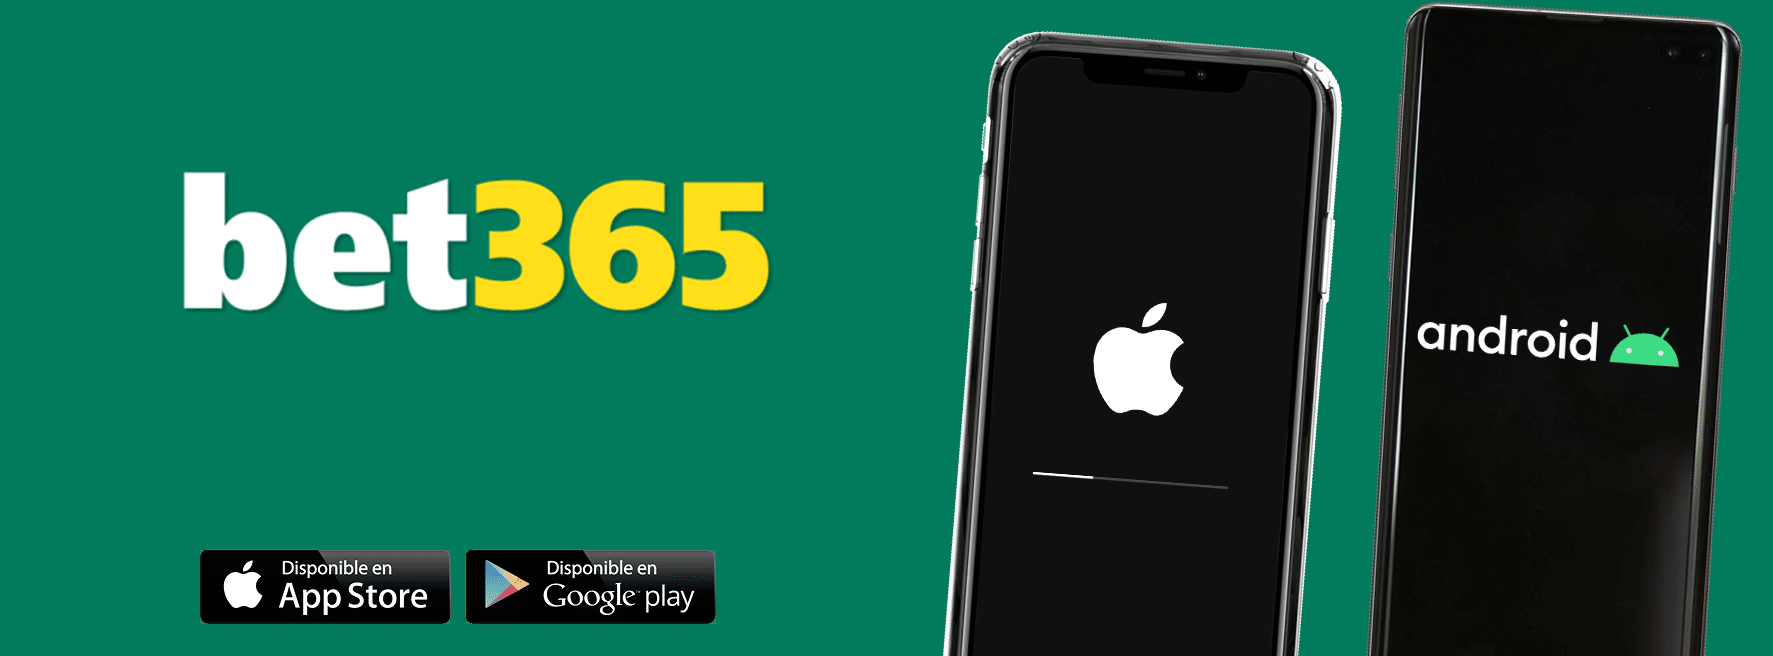 Bet365 en dispositivos móviles